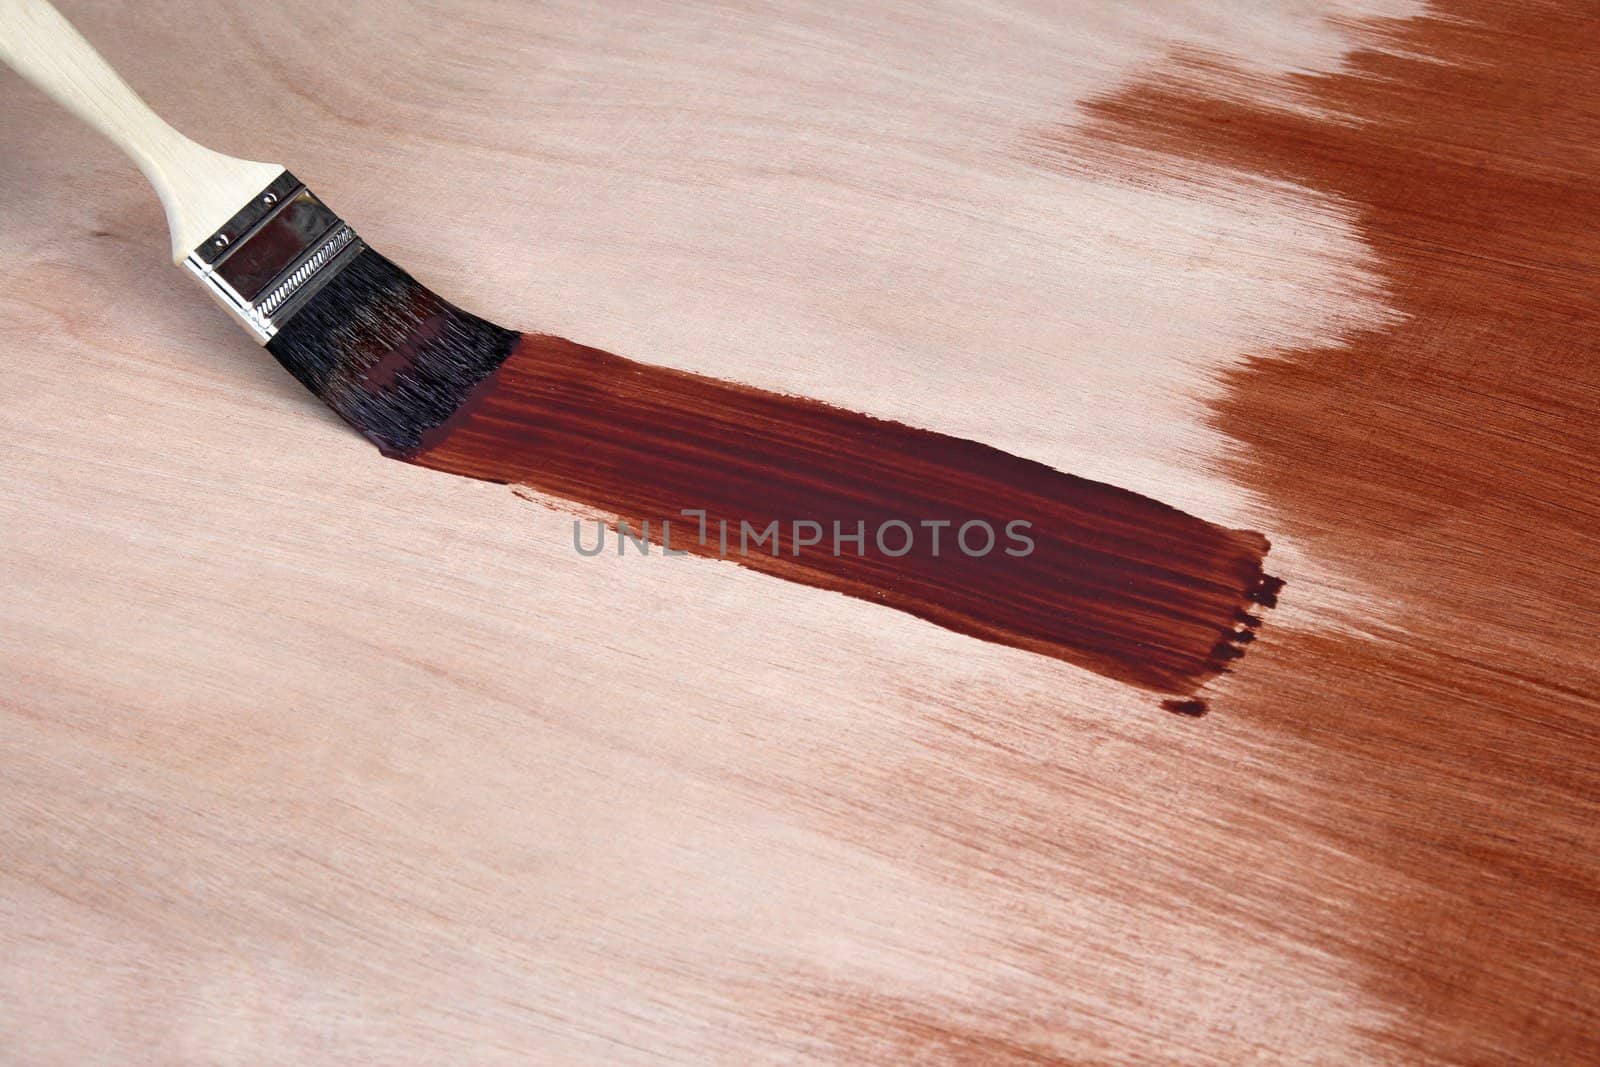 Paintbrush leaving a fresh brush stroke on wooden surface.